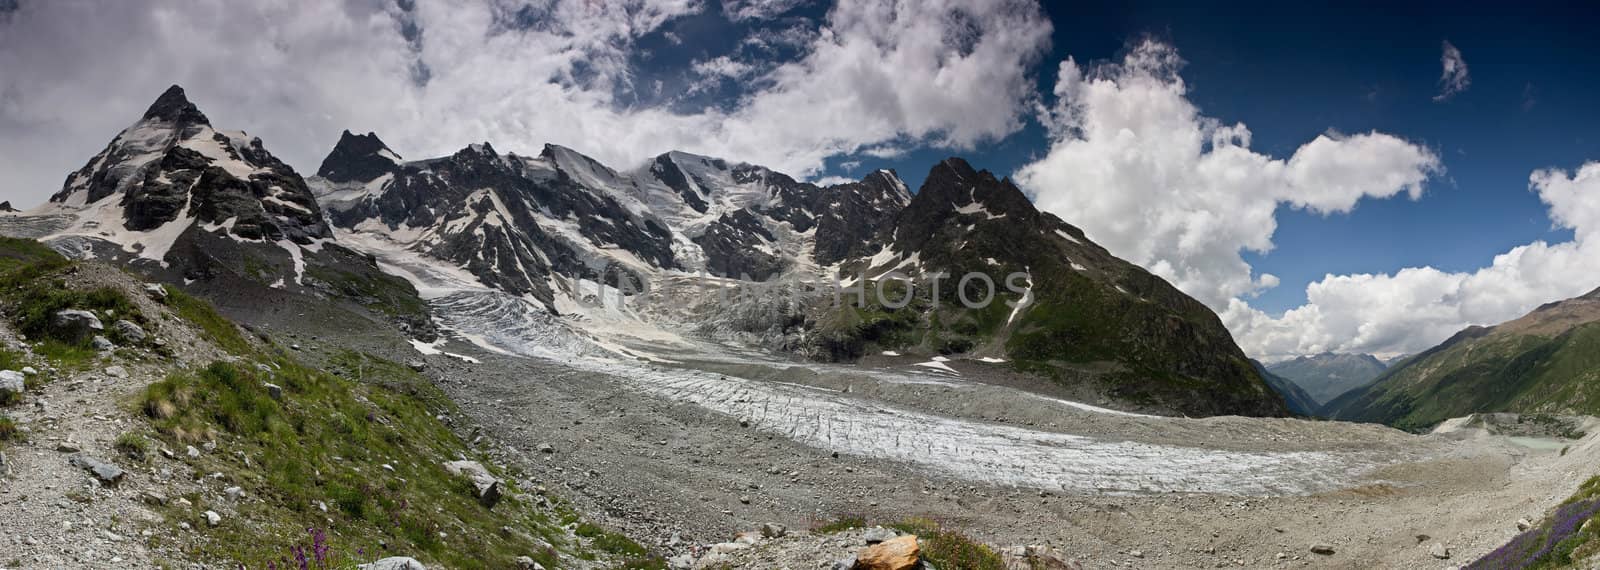 Caucasus Mountains in summer. Panorama